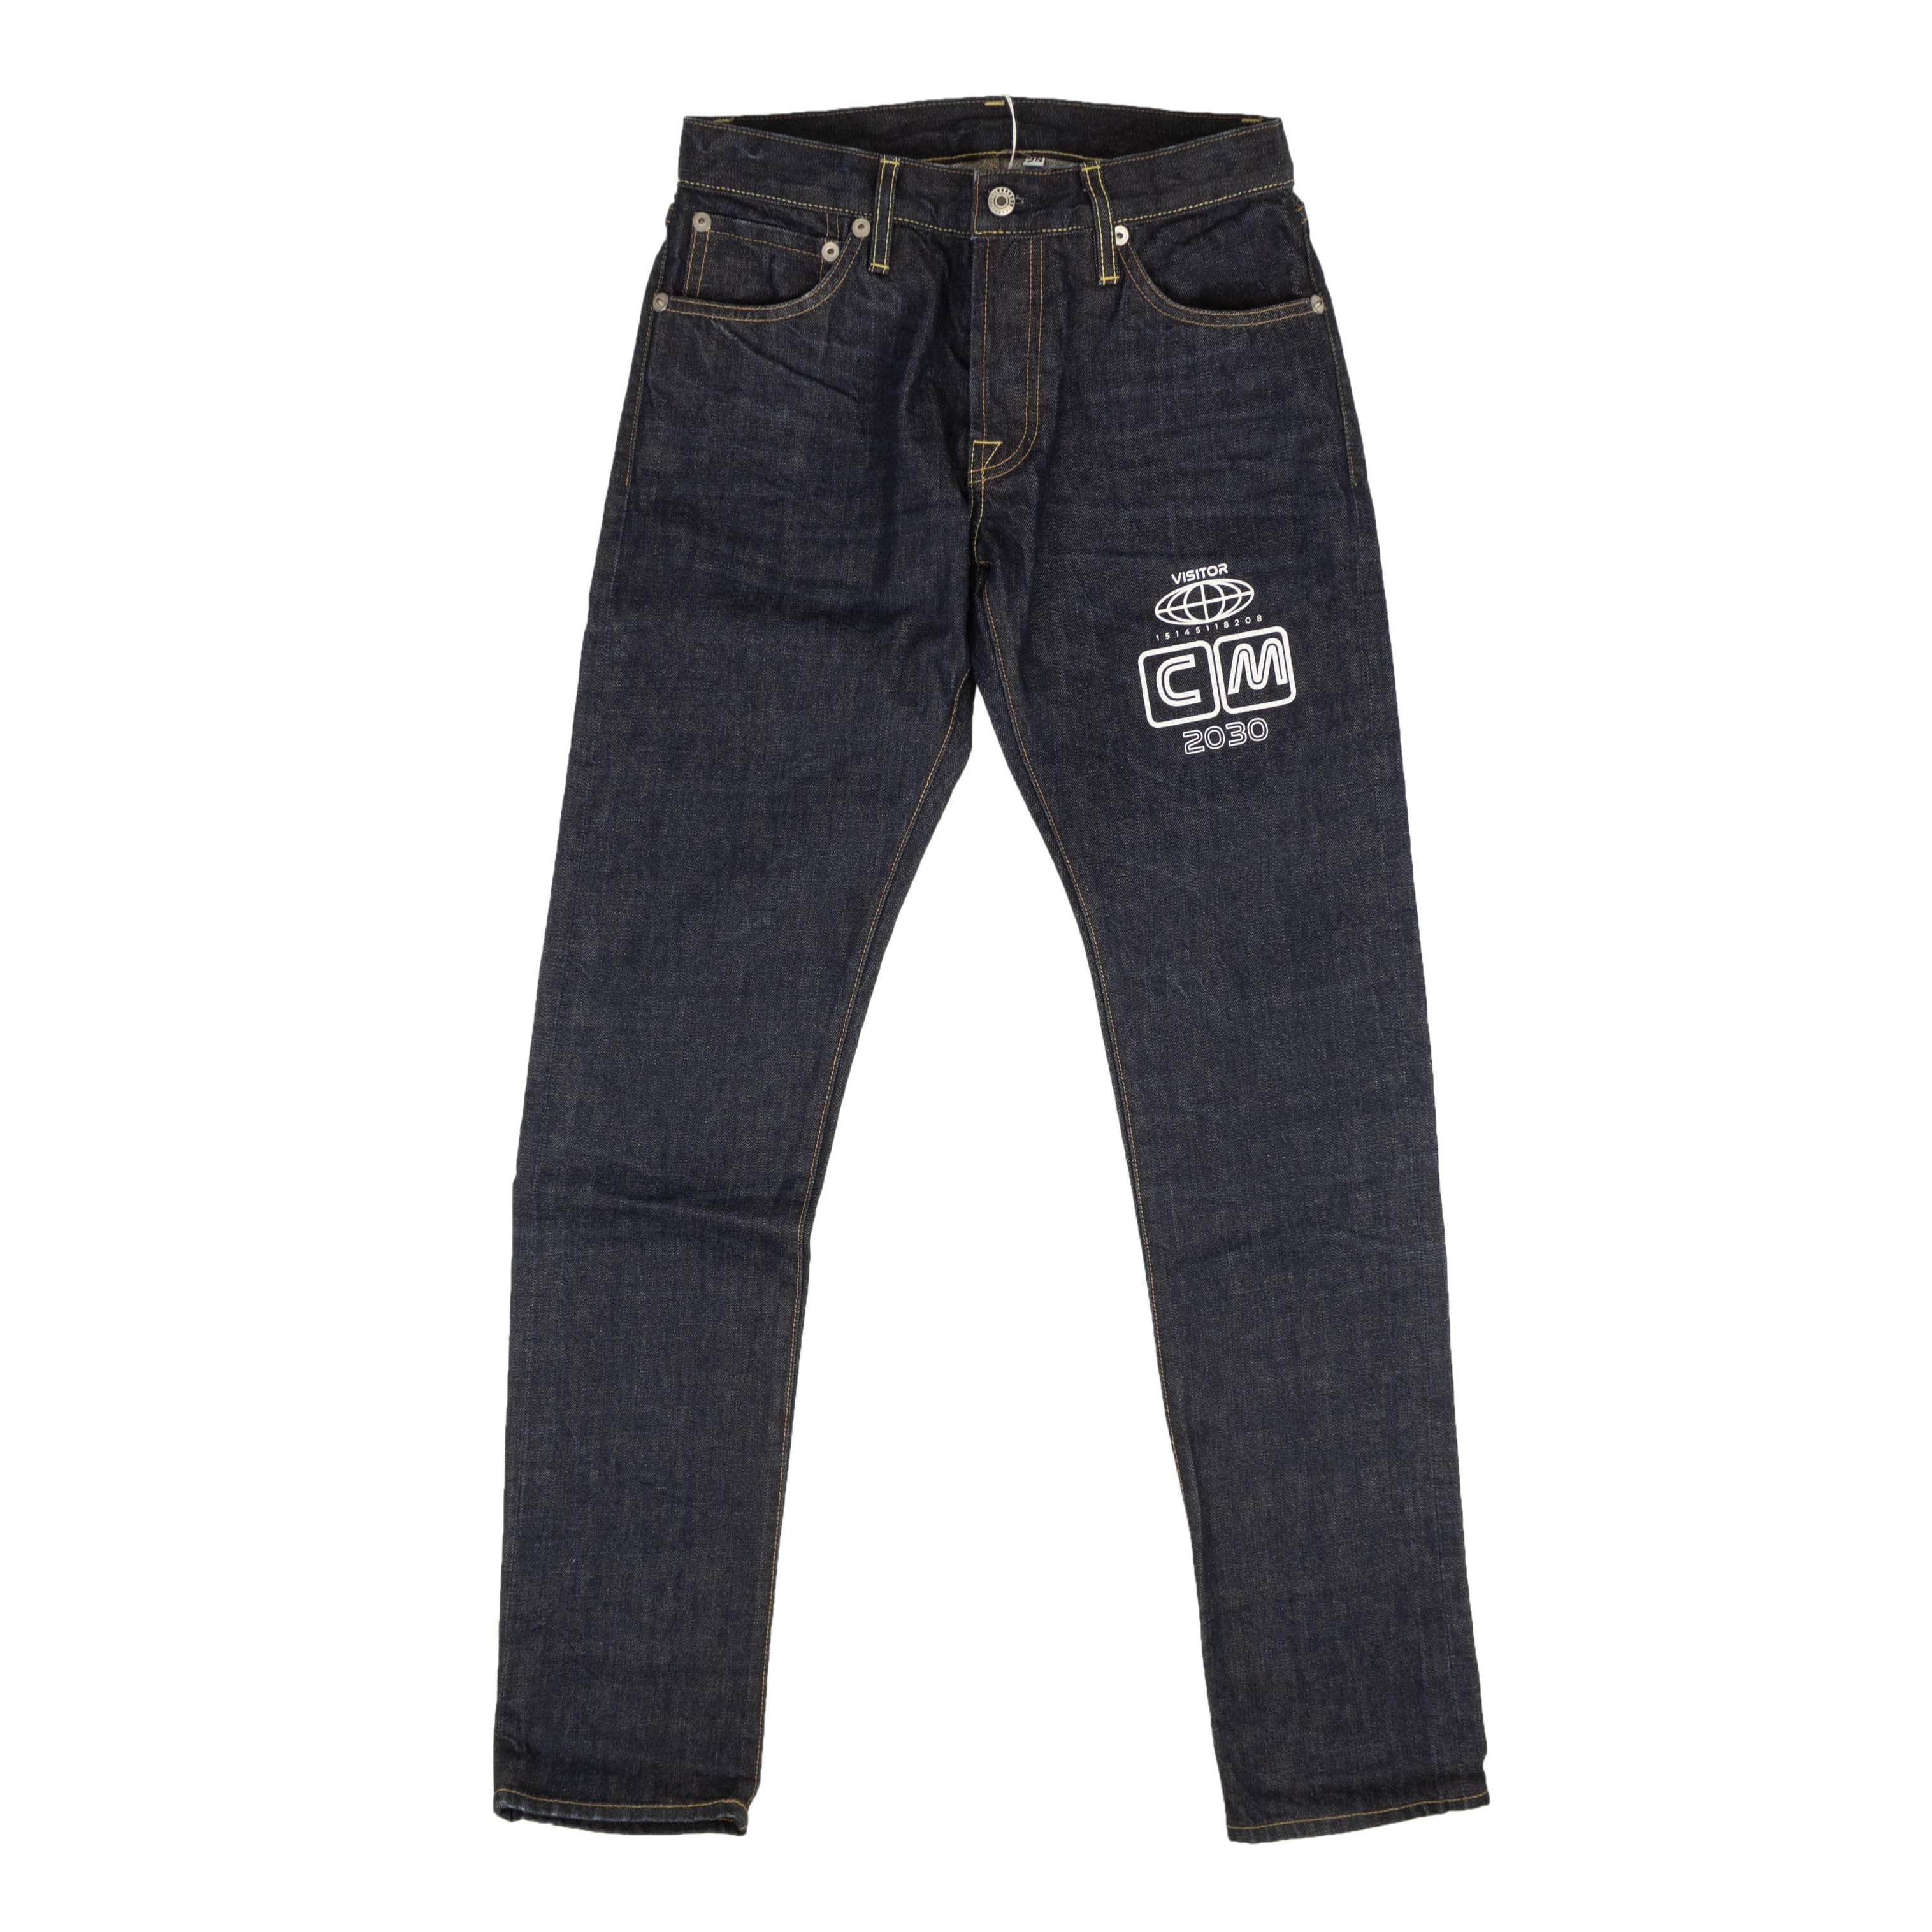 Black Baggy Fit Carpenter Jeans - Size 32/30